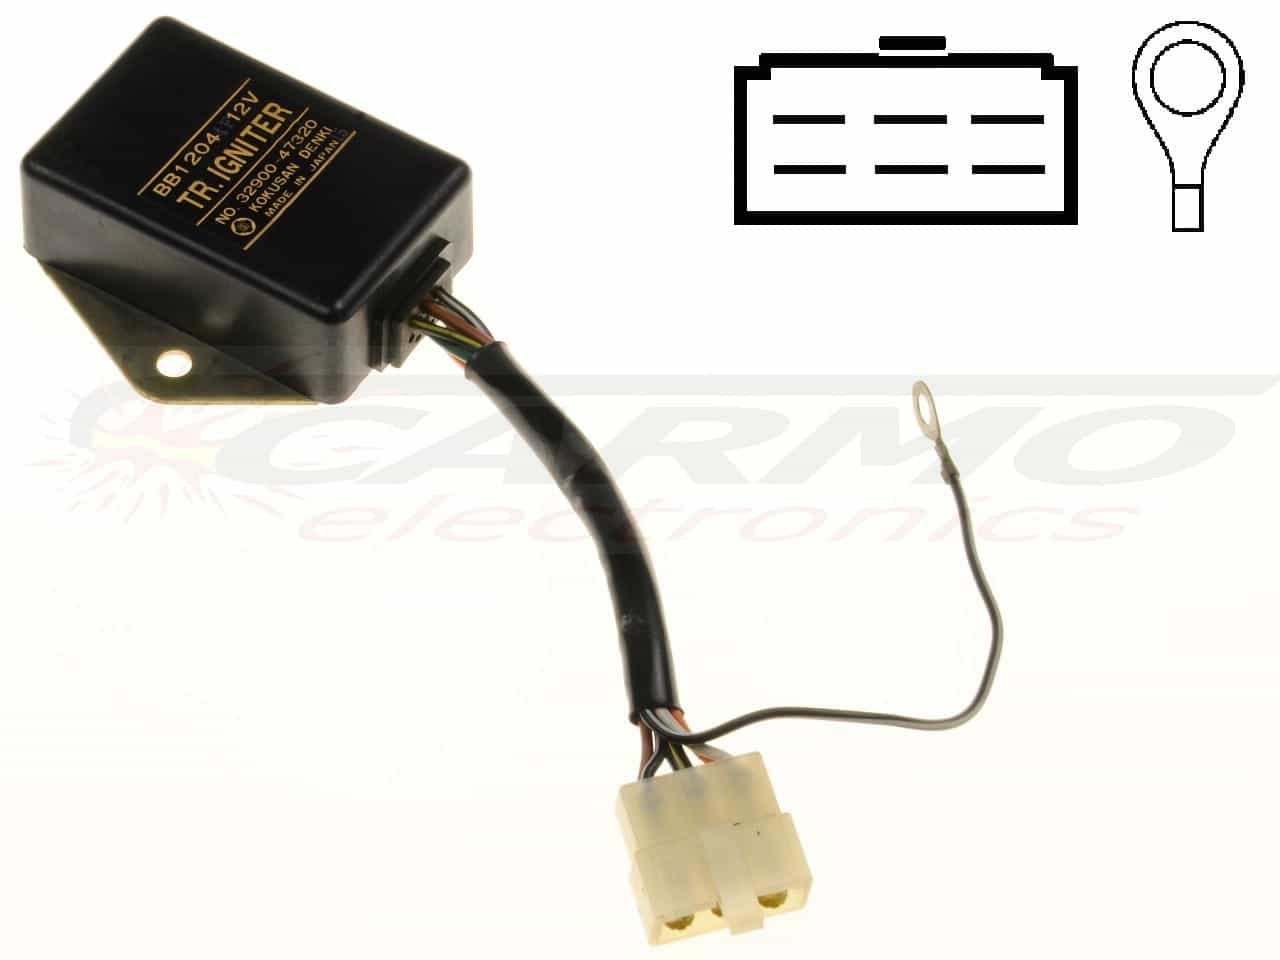 GS400 - GS650 TCI CDI dispositif de commande boîte noire (BB1203, BB1204)